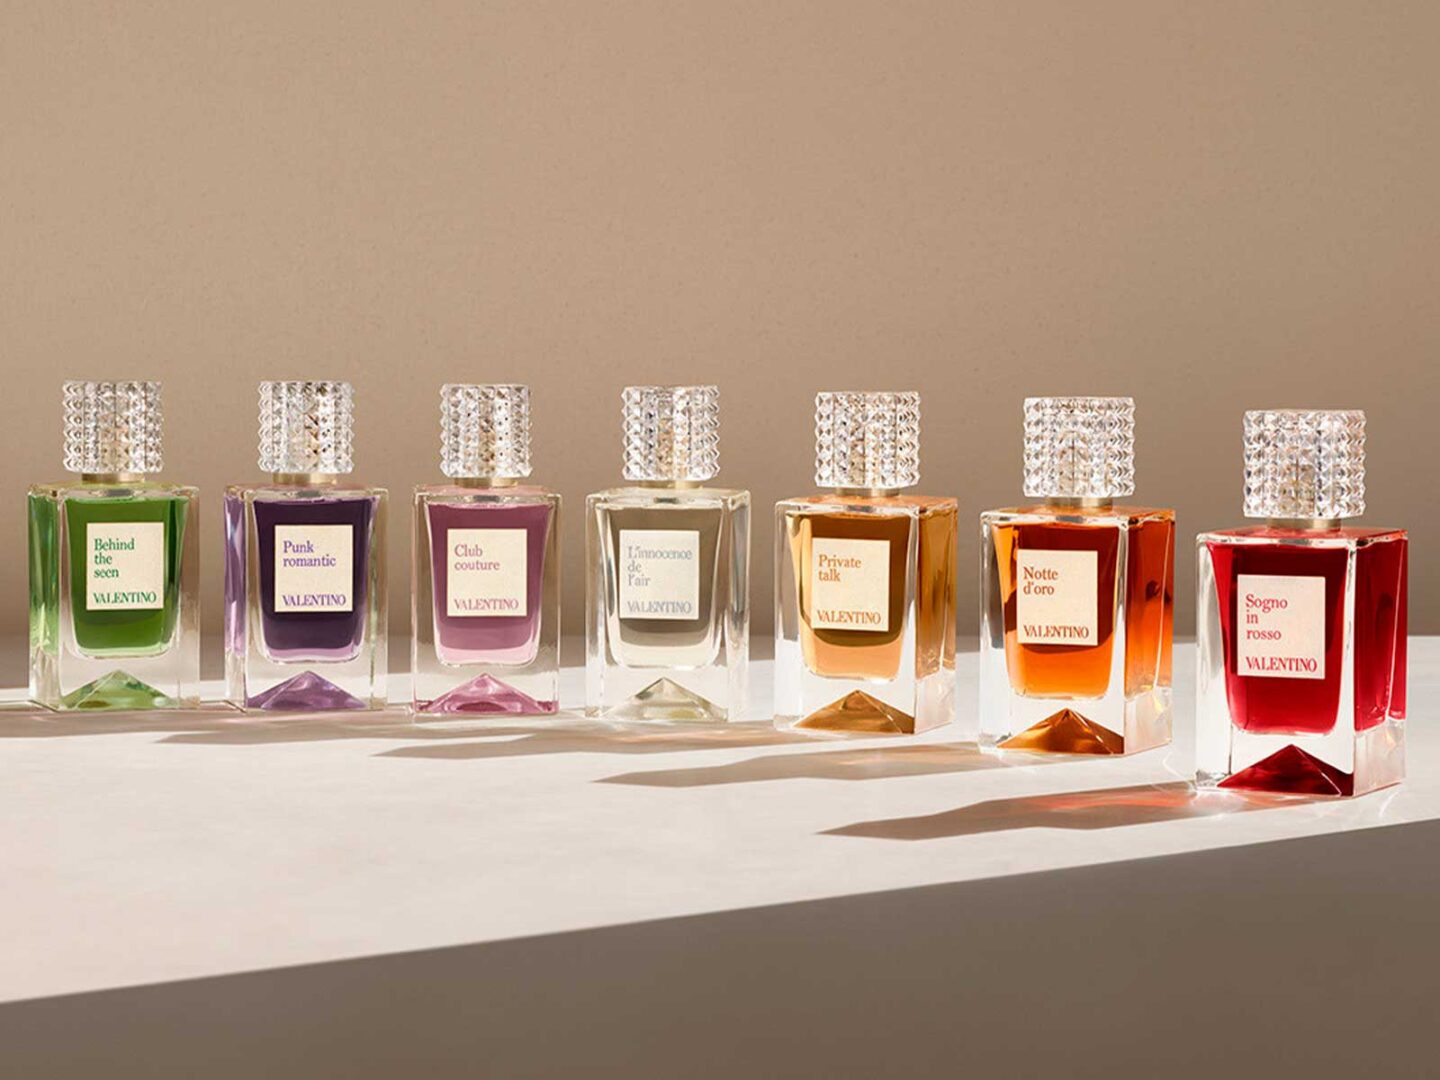 Valentino lanza una colección de fragancias ‘haute couture’